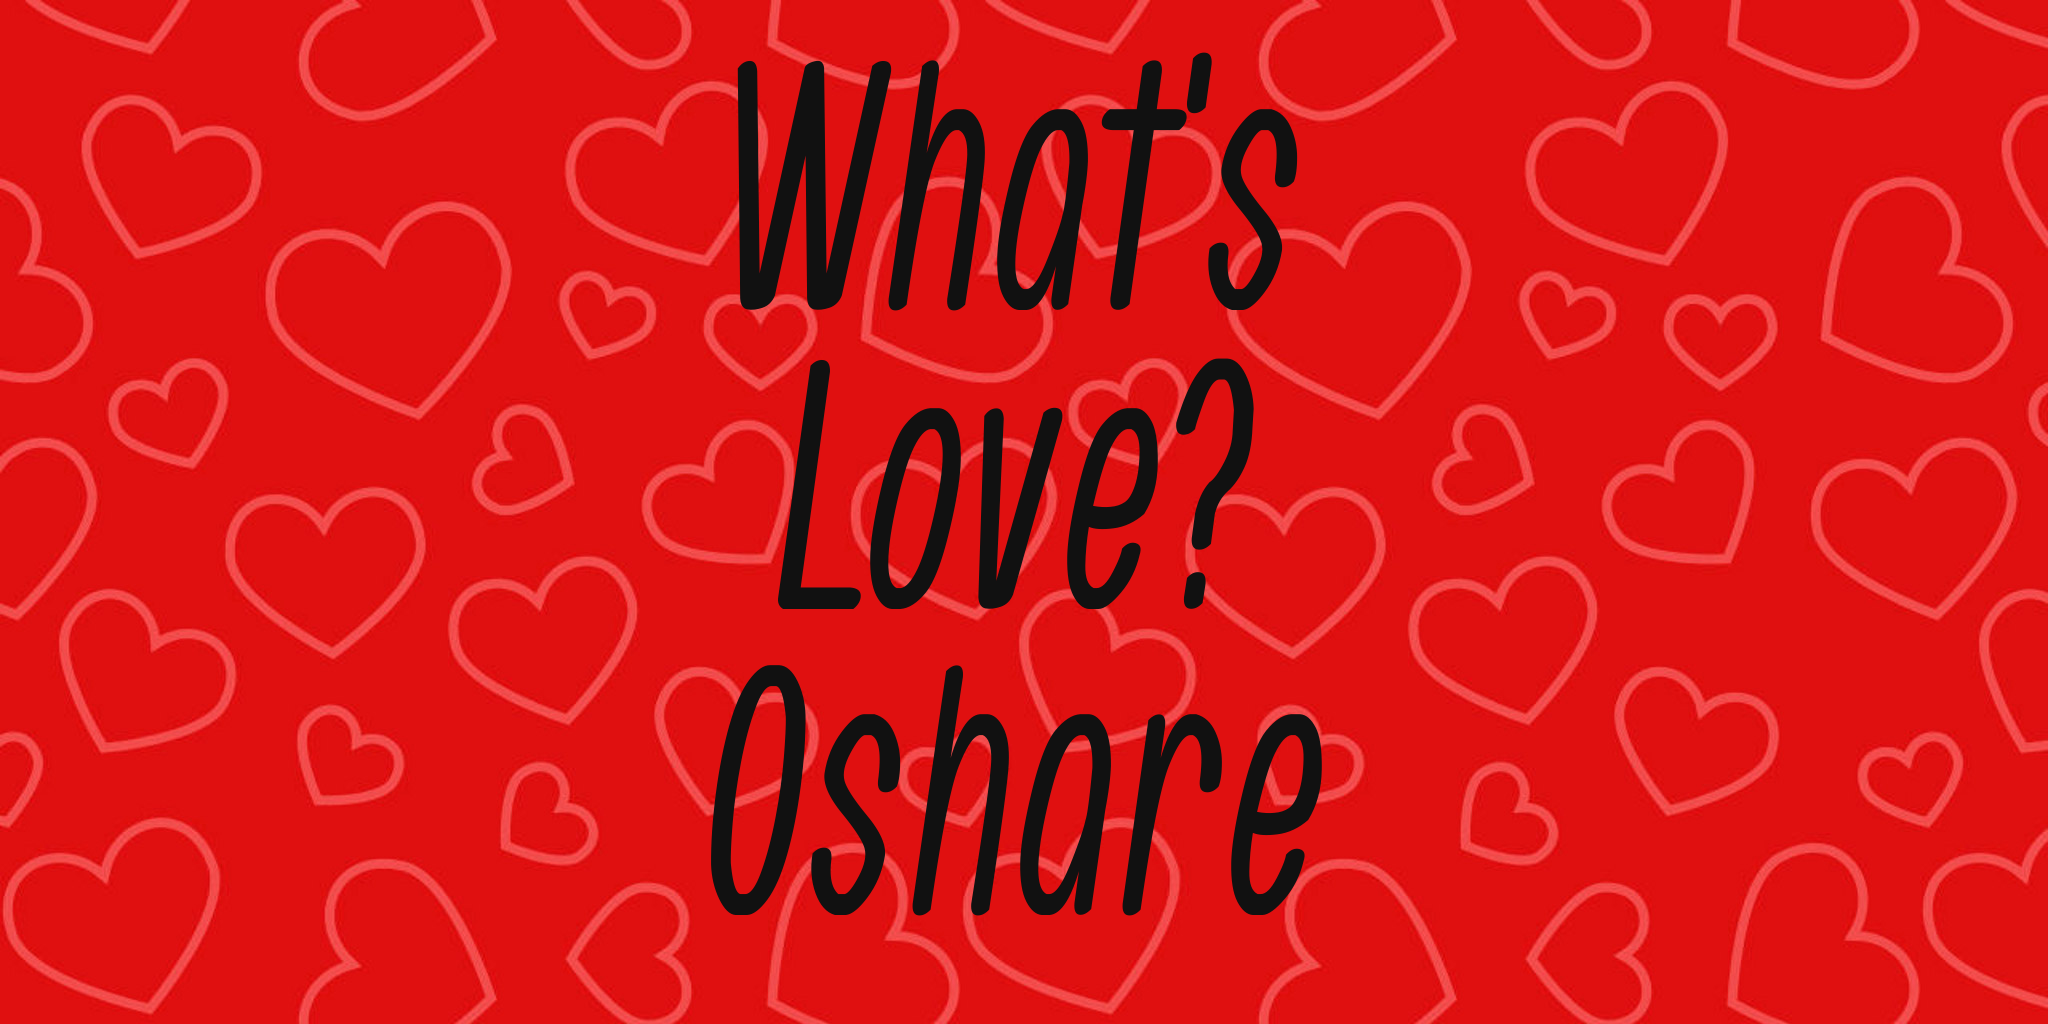 What's Love? Oshare